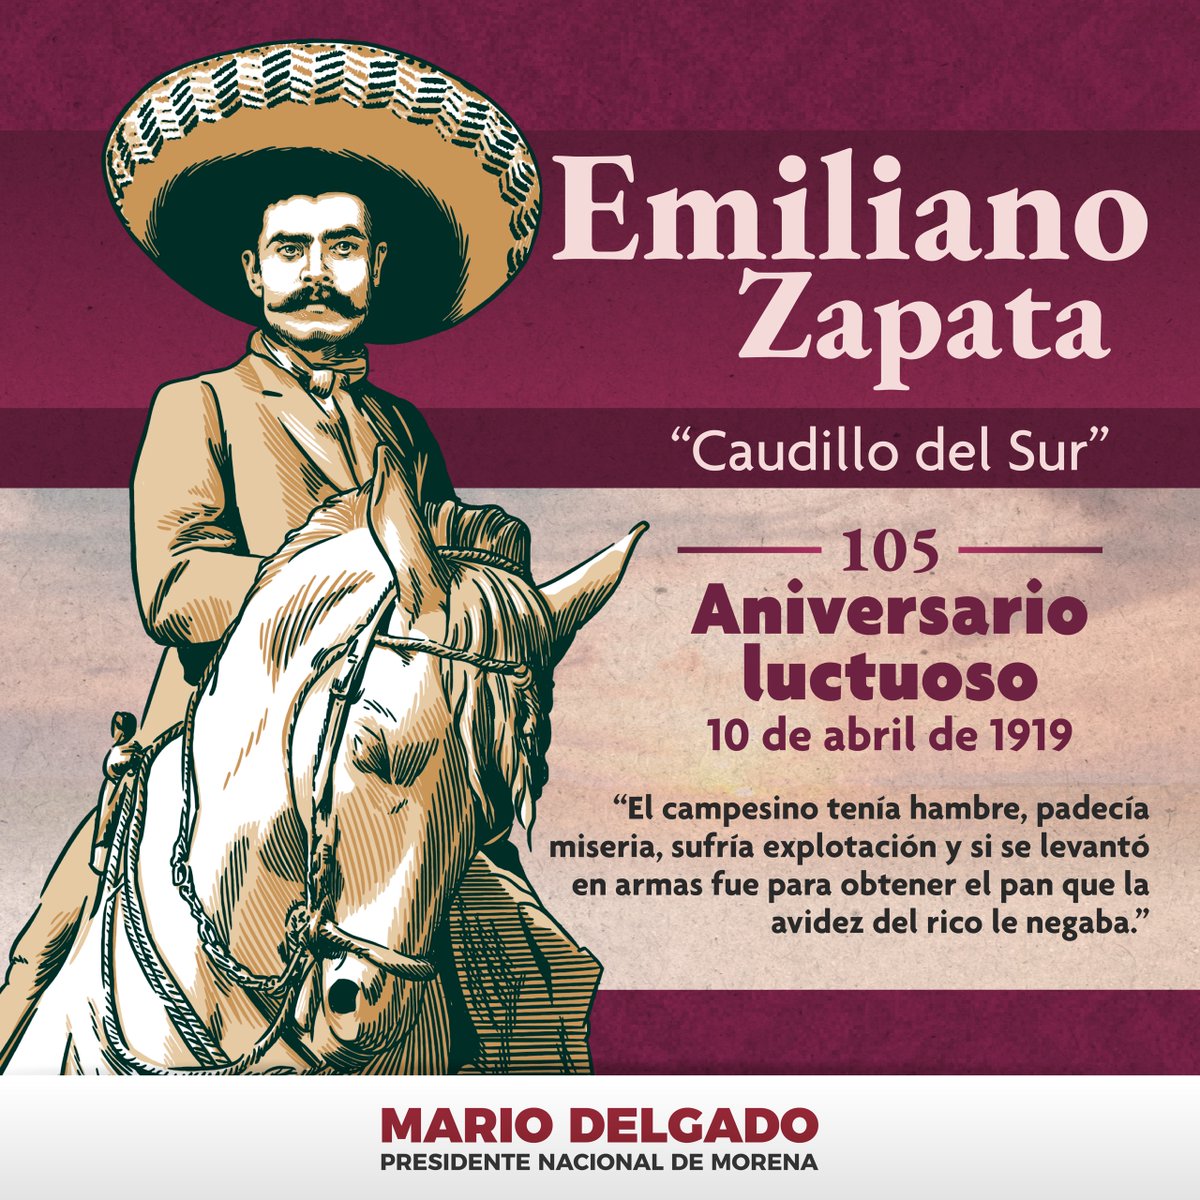 Conmemoramos el aniversario luctuoso de Emiliano Zapata, “El Caudillo del Sur”. Hombre que entregó su vida a la lucha del pueblo por un México con justicia y libertad. Comandante del Ejército Libertador del Sur y símbolo de la resistencia campesina. Sus ideales de igualdad,…